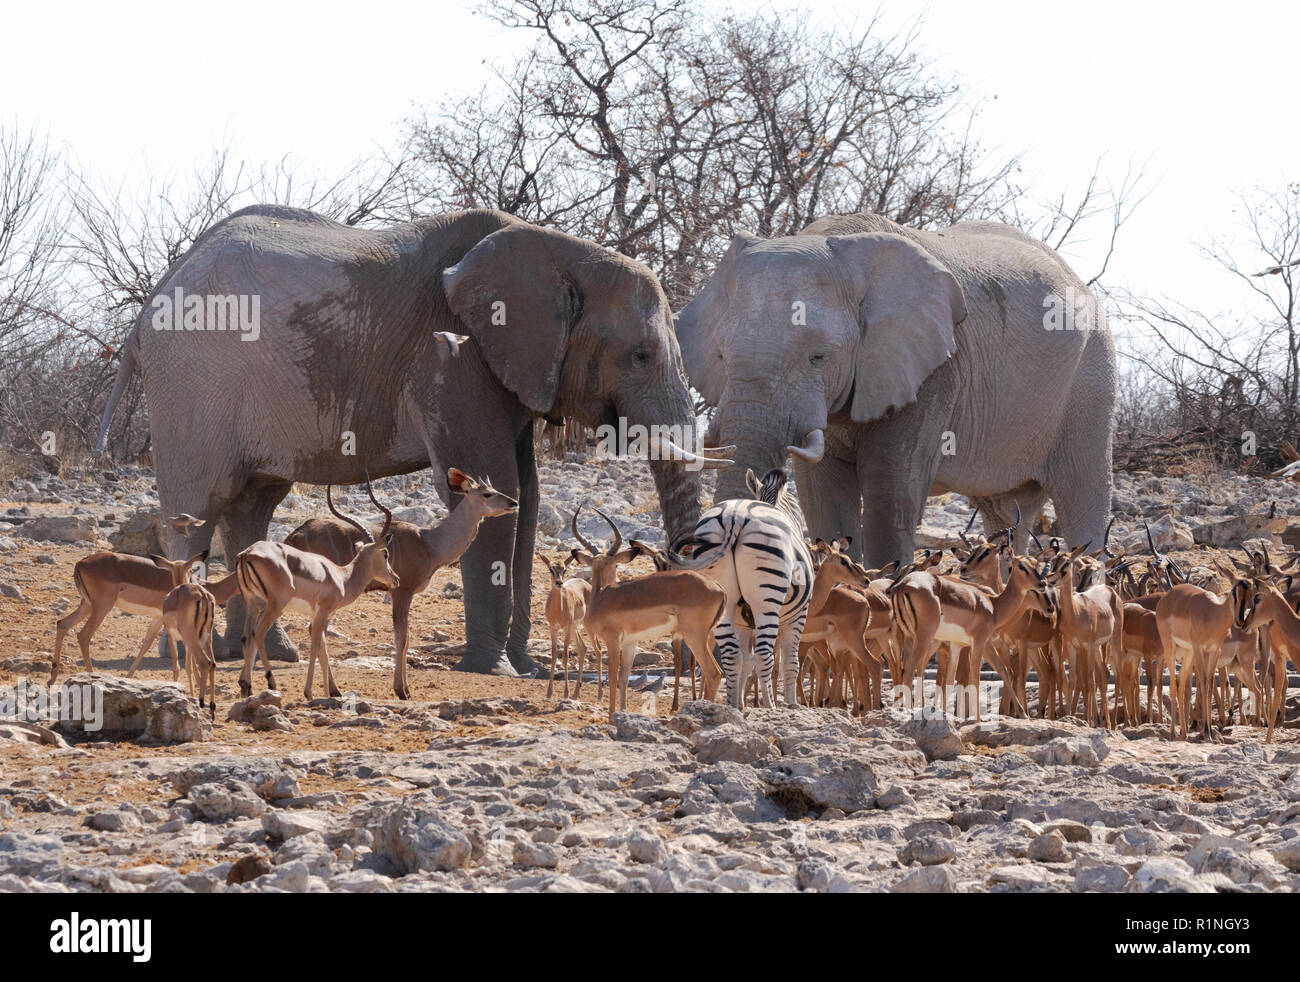 La faune de l'Afrique - une paire d'éléphants africains adultes holding tribunal avec une variété d'animaux, Etosha National Park, Namibie, Afrique Banque D'Images